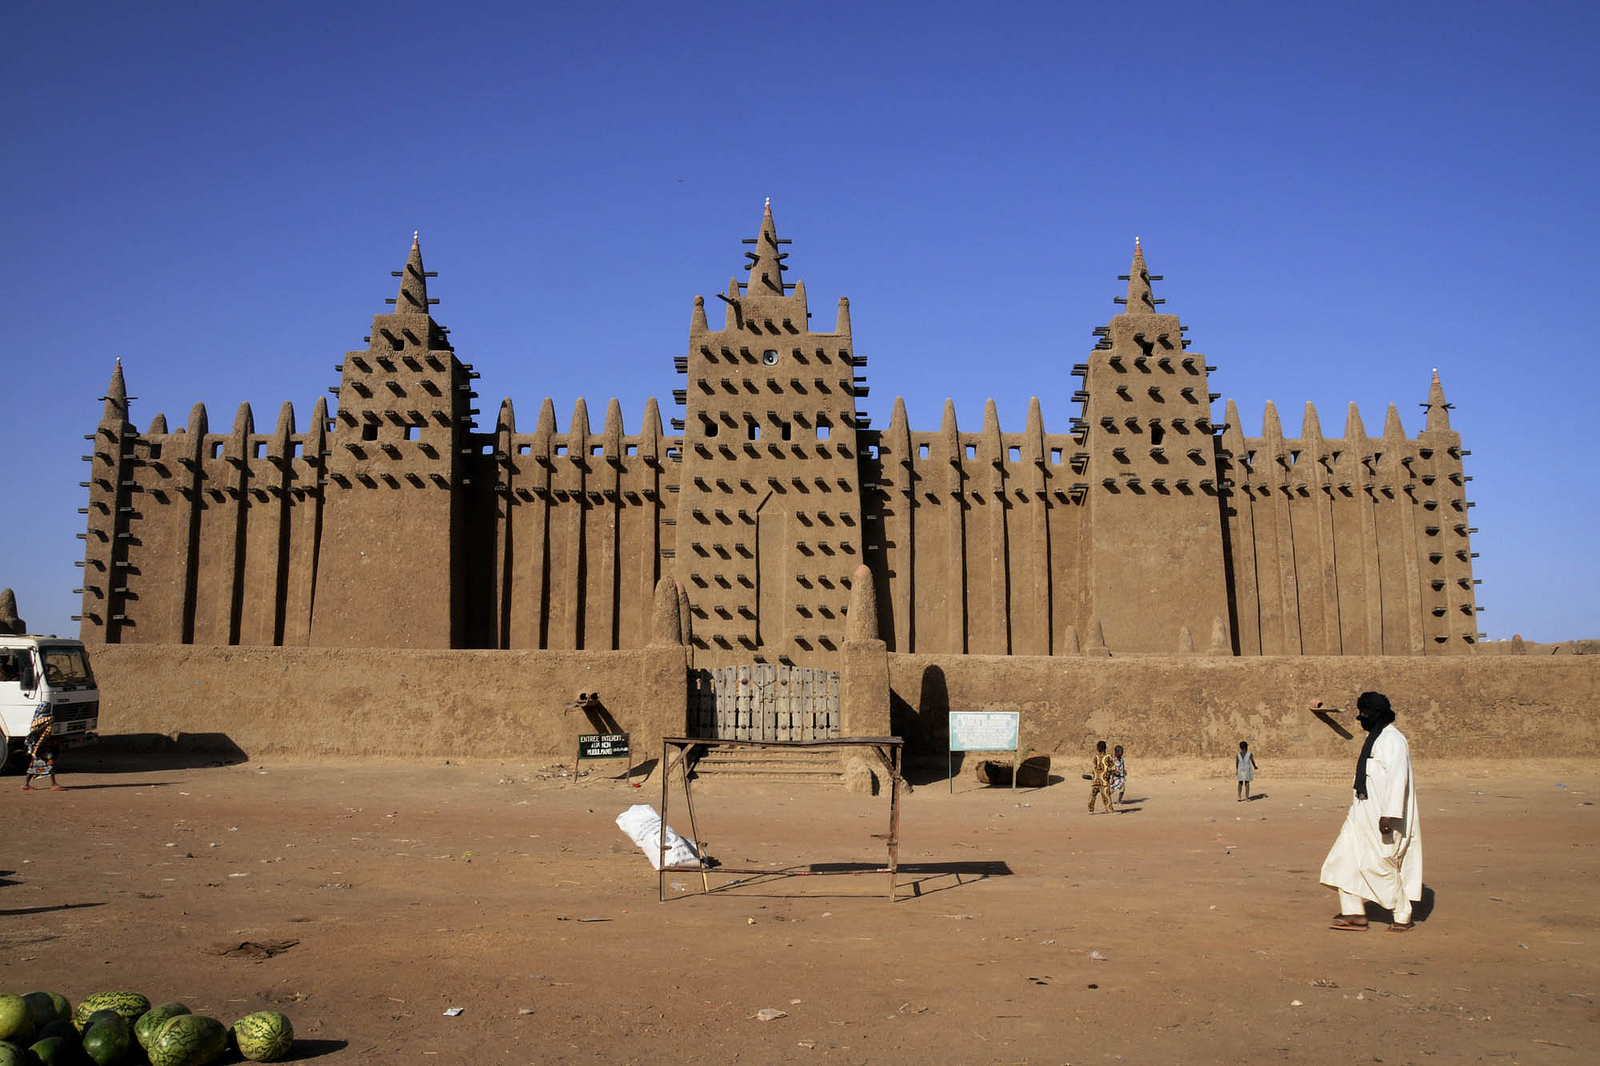 ภาพจาก Flickr - UN Mission in Mali